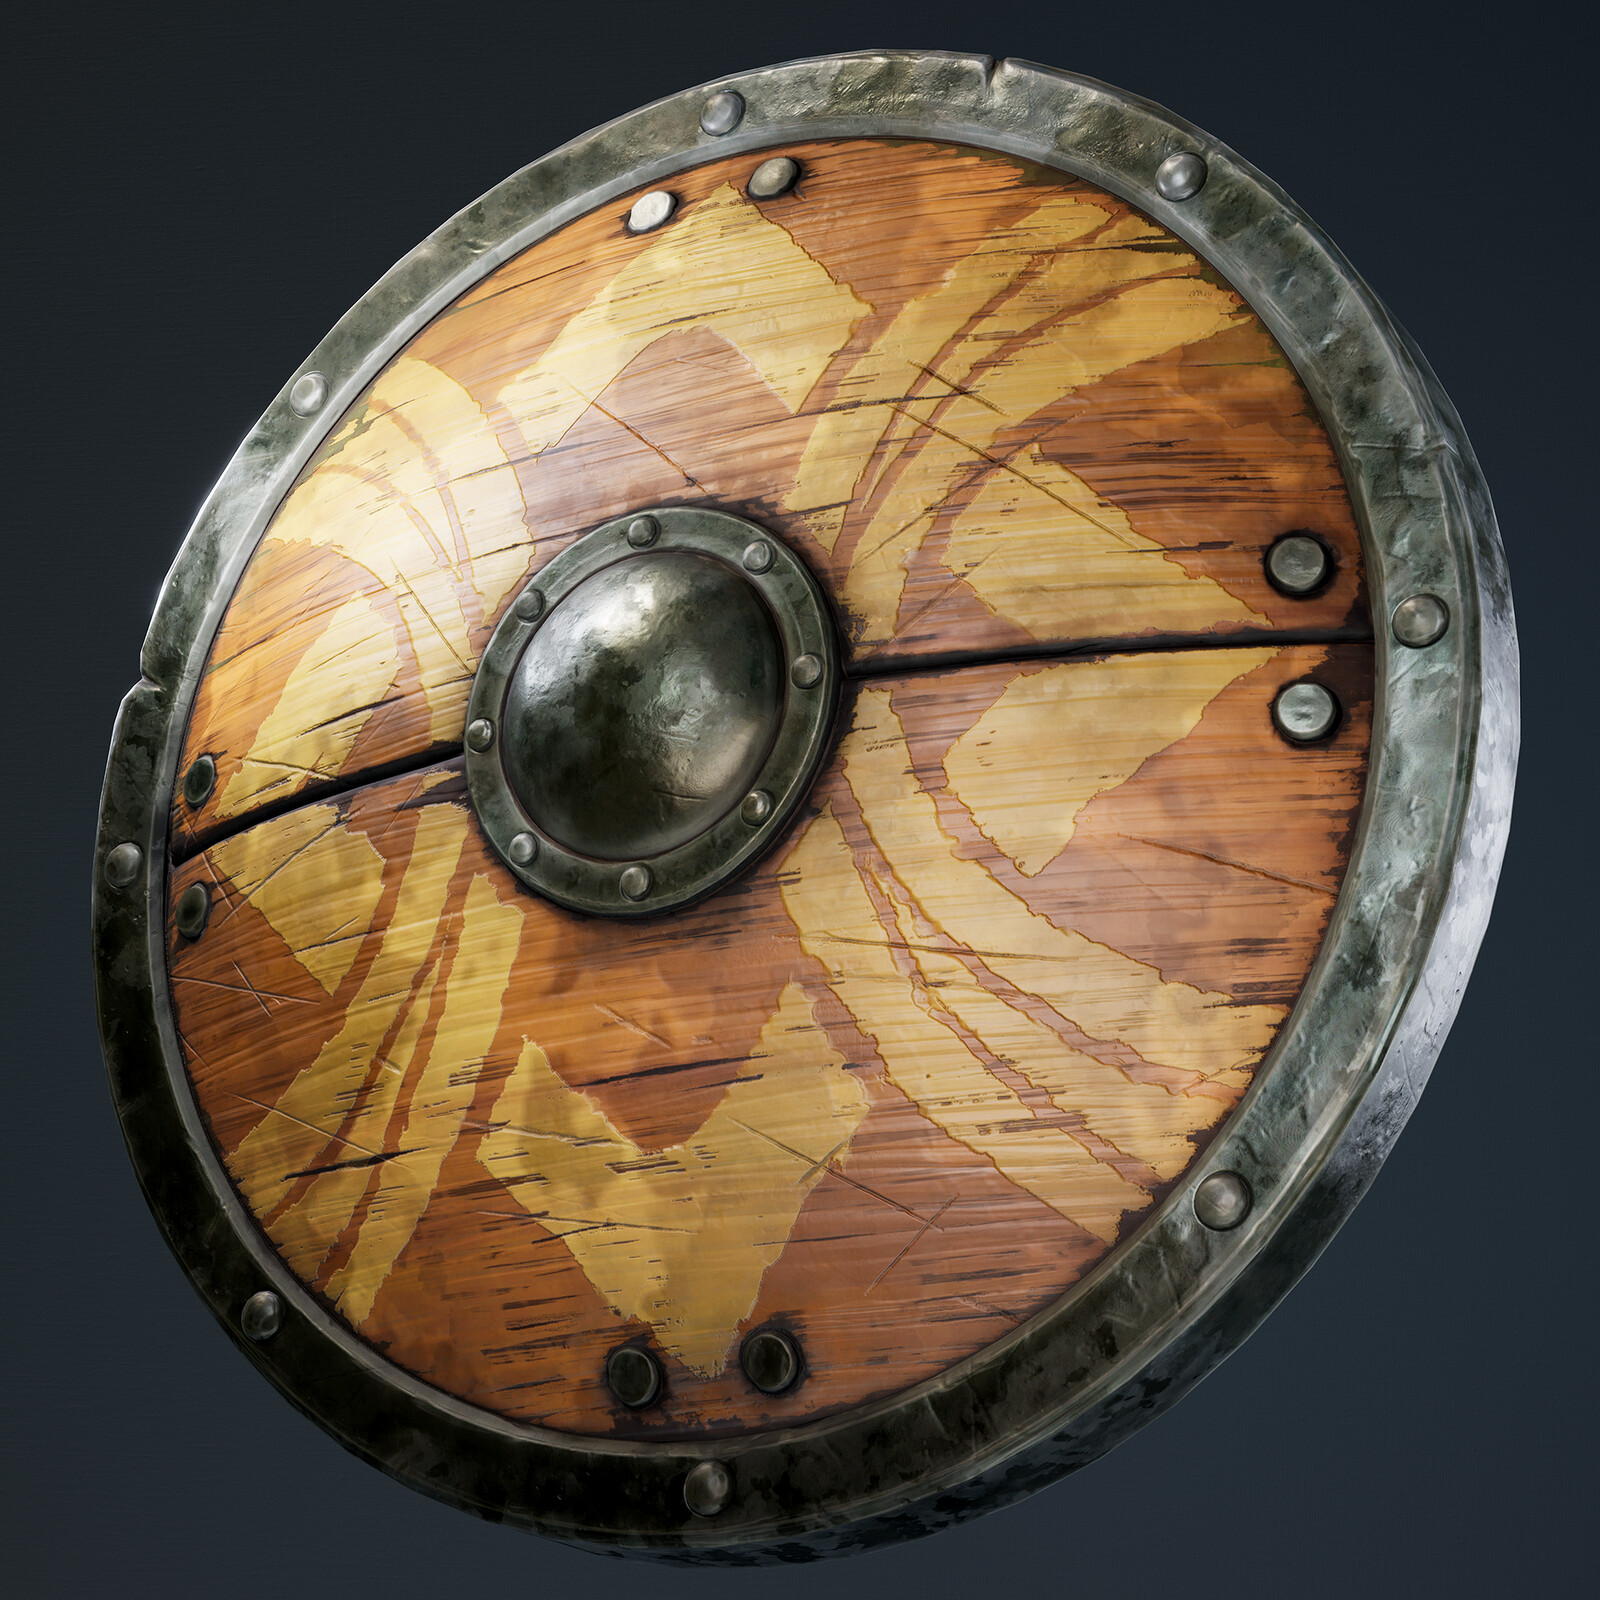 Soldier's Shield. A Zelda BOTW Fanart